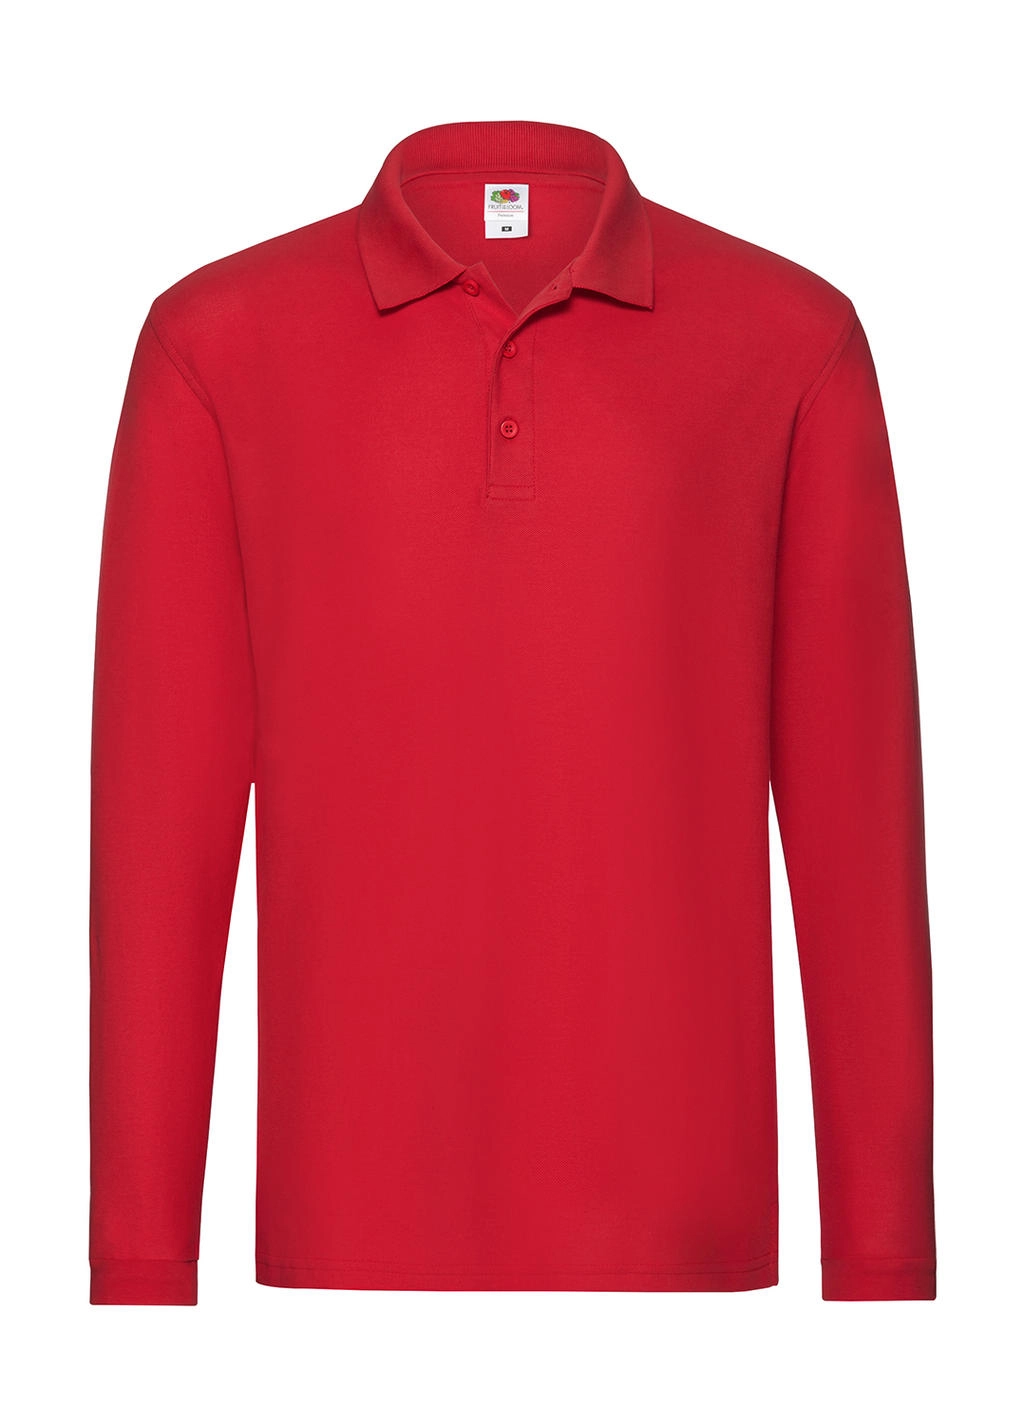 Premium Long Sleeve Polo zum Besticken und Bedrucken in der Farbe Red mit Ihren Logo, Schriftzug oder Motiv.